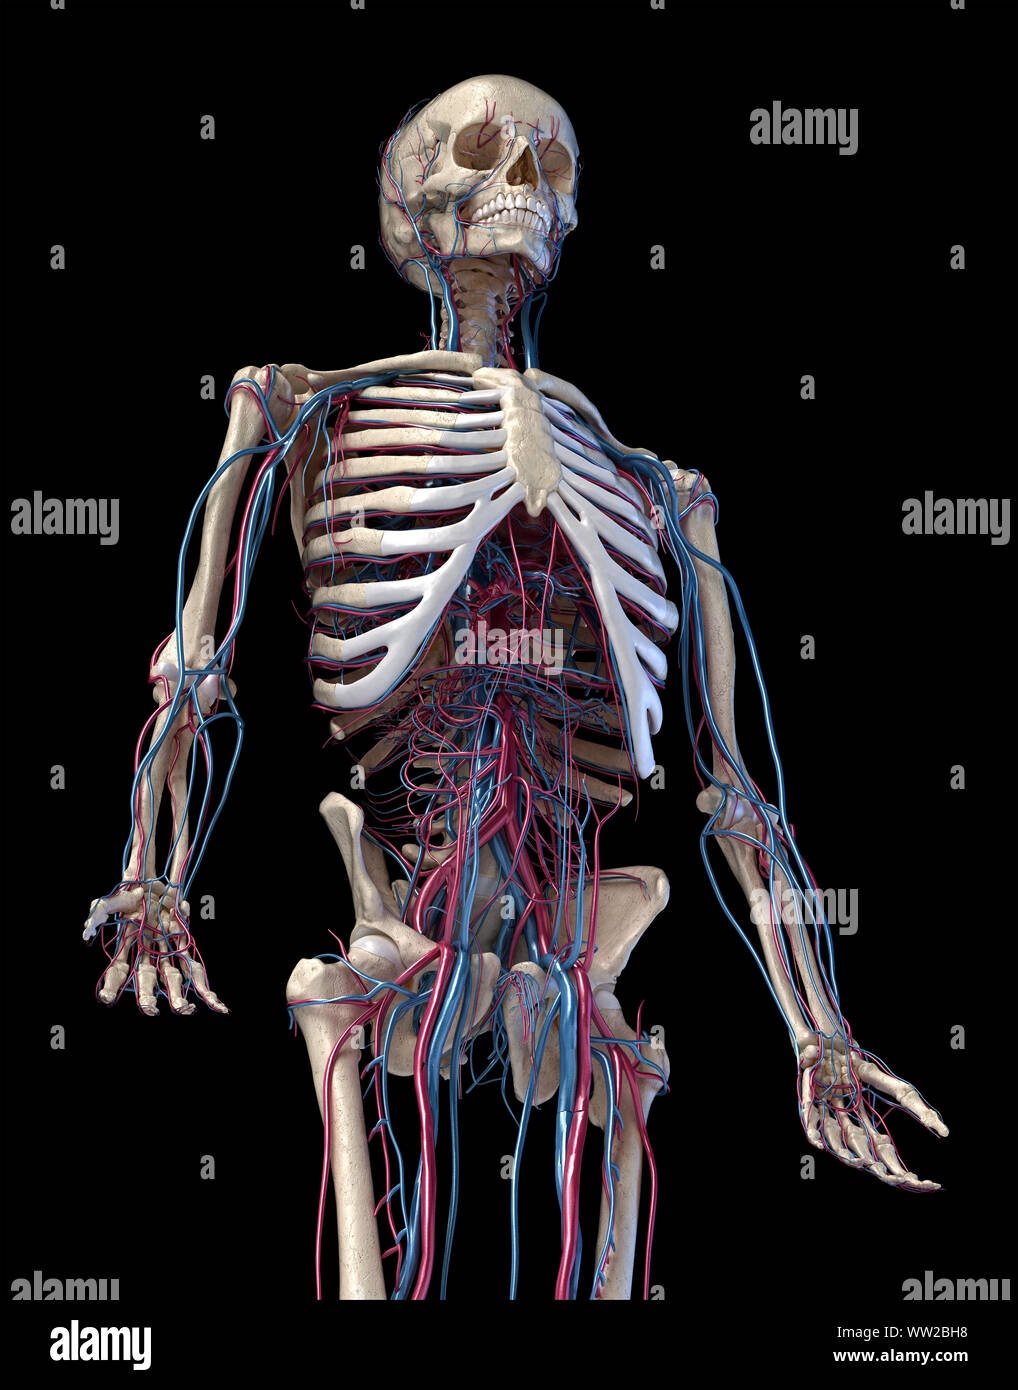 Anatomia Umana, 3d illustrazione dello scheletro con sistema cardiovascolare. Vista prospettica di 3/4 parte superiore, lato anteriore. Su sfondo nero. Foto Stock